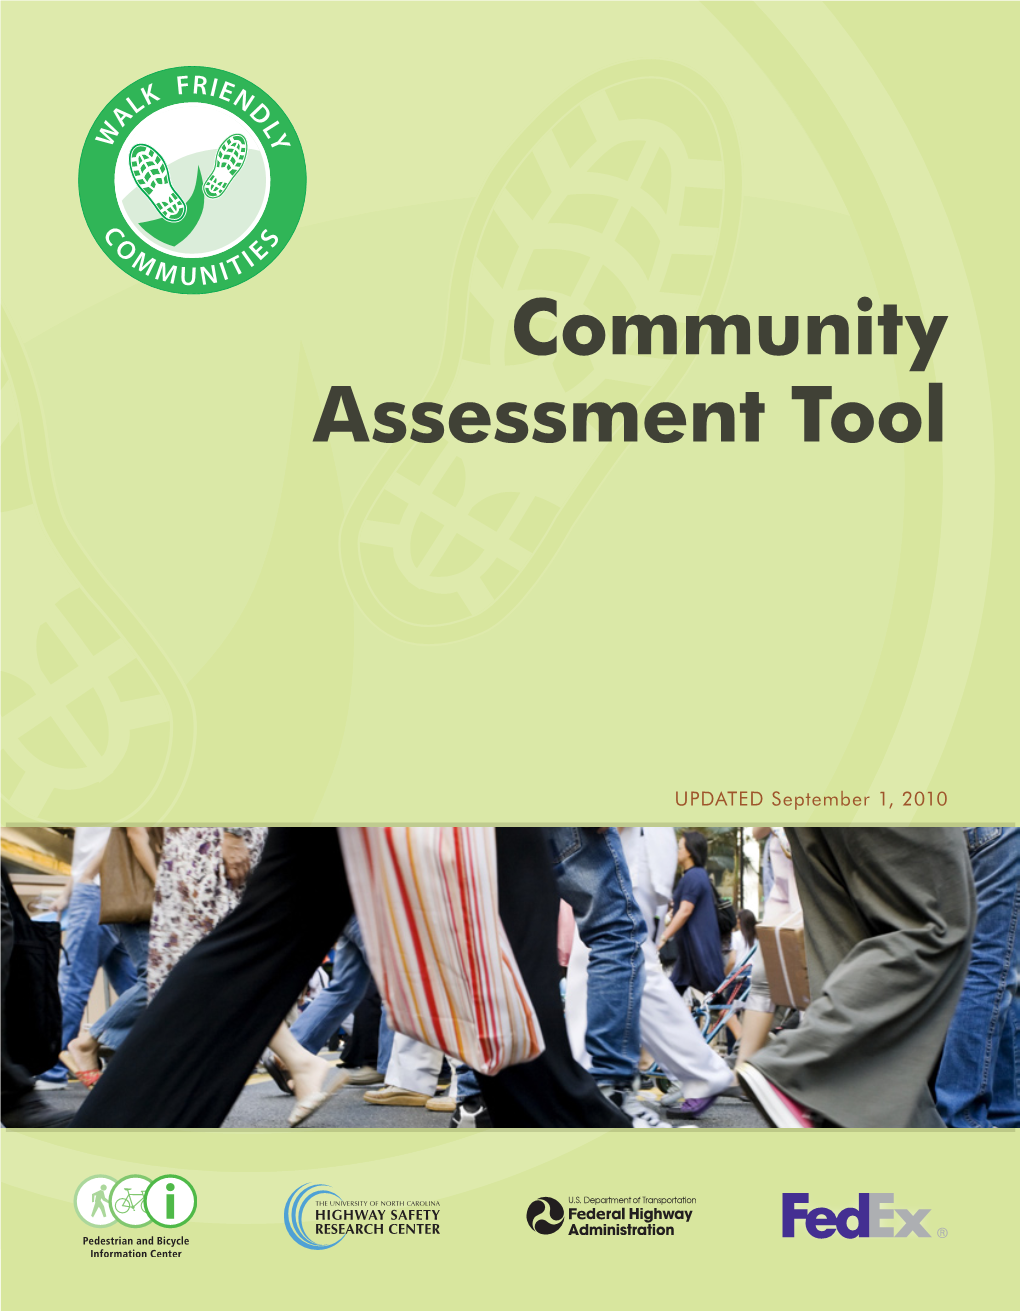 Walk Friendly Communities Assessment Tool